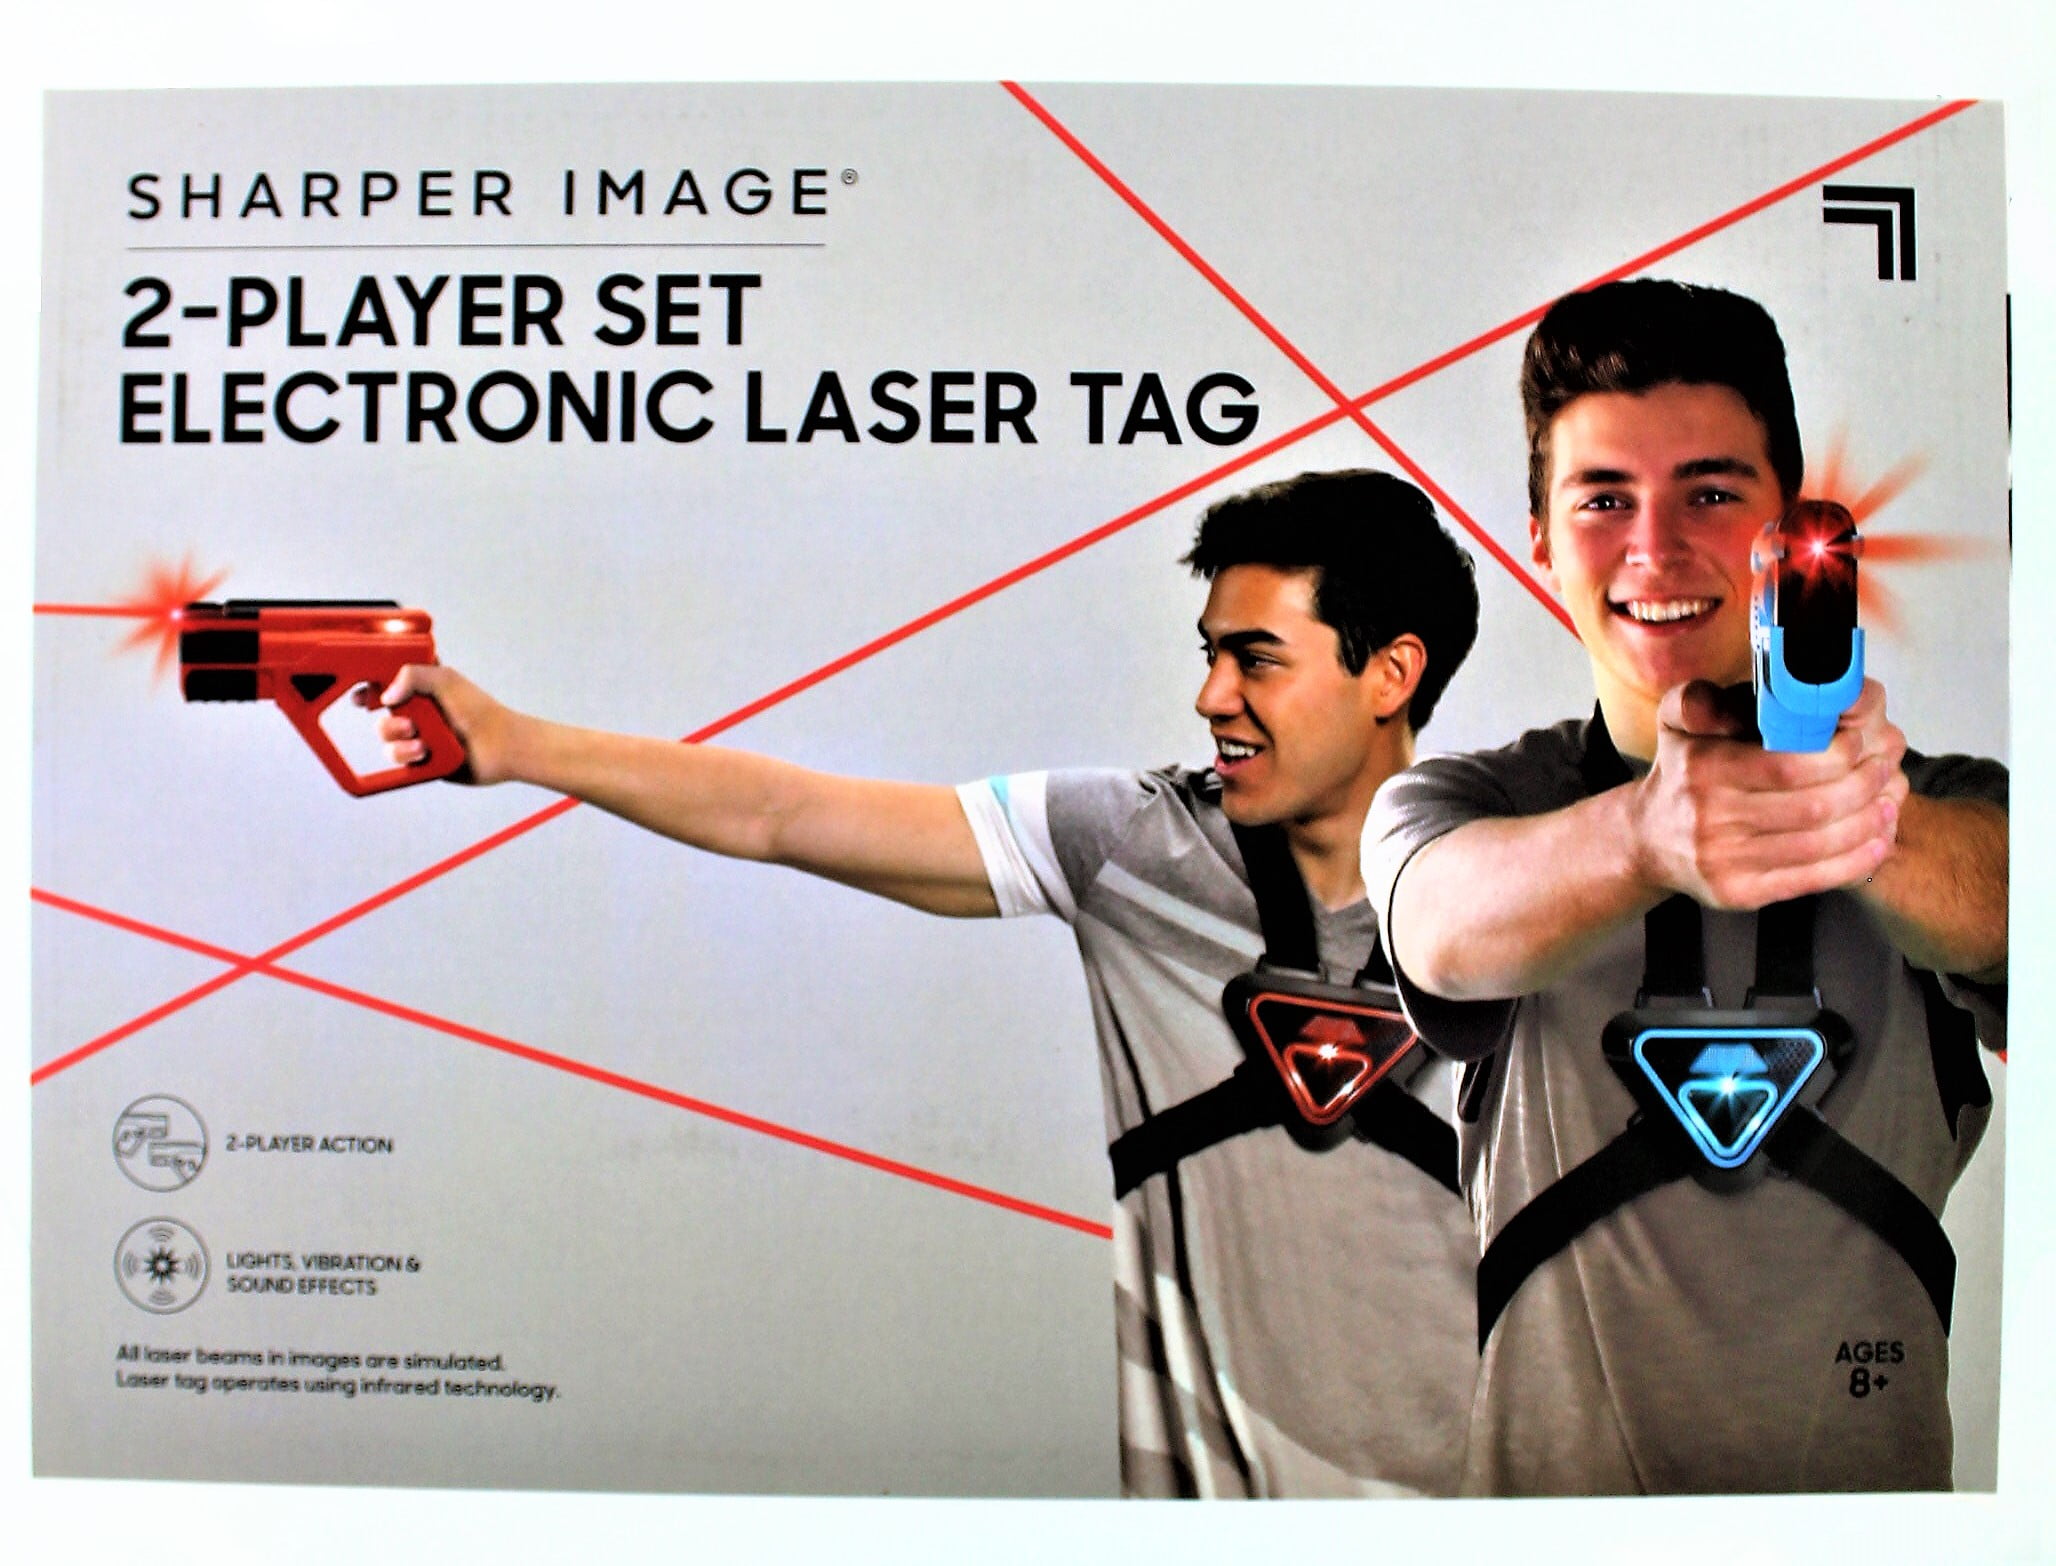 Sharper Image 2-Player Set Electronic Laser Tag